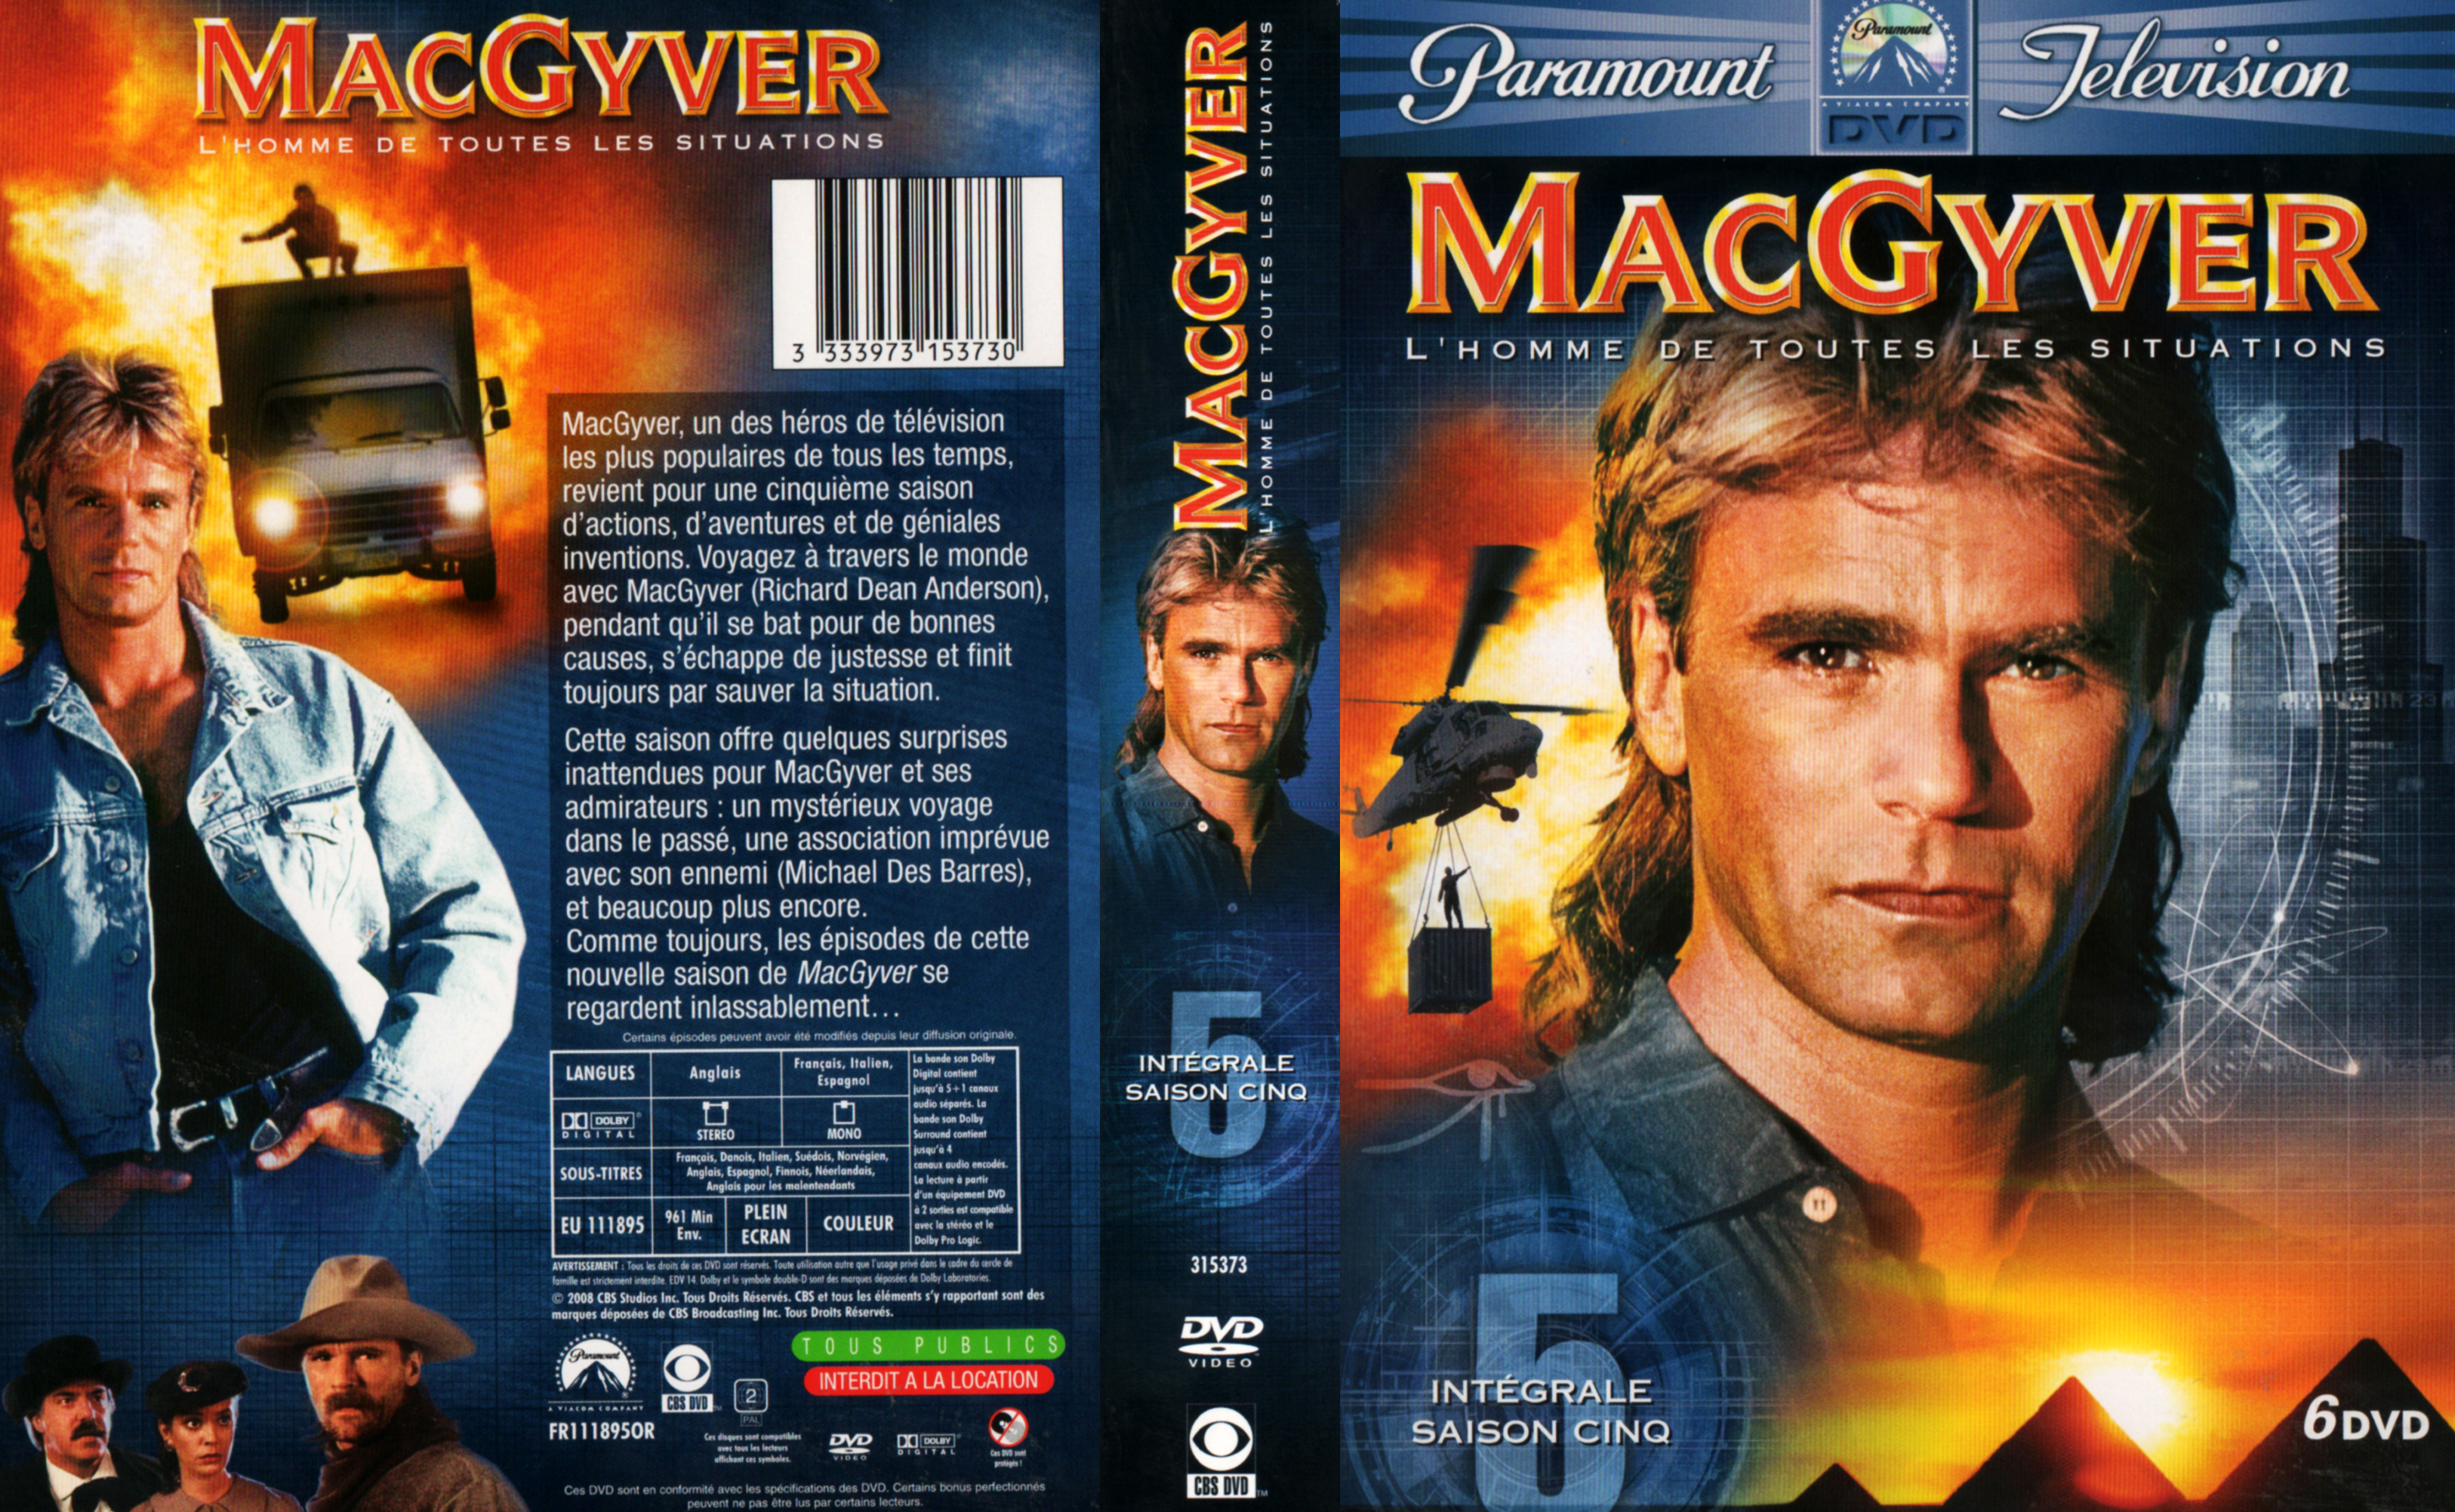 Jaquette DVD MacGyver Saison 5 COFFRET